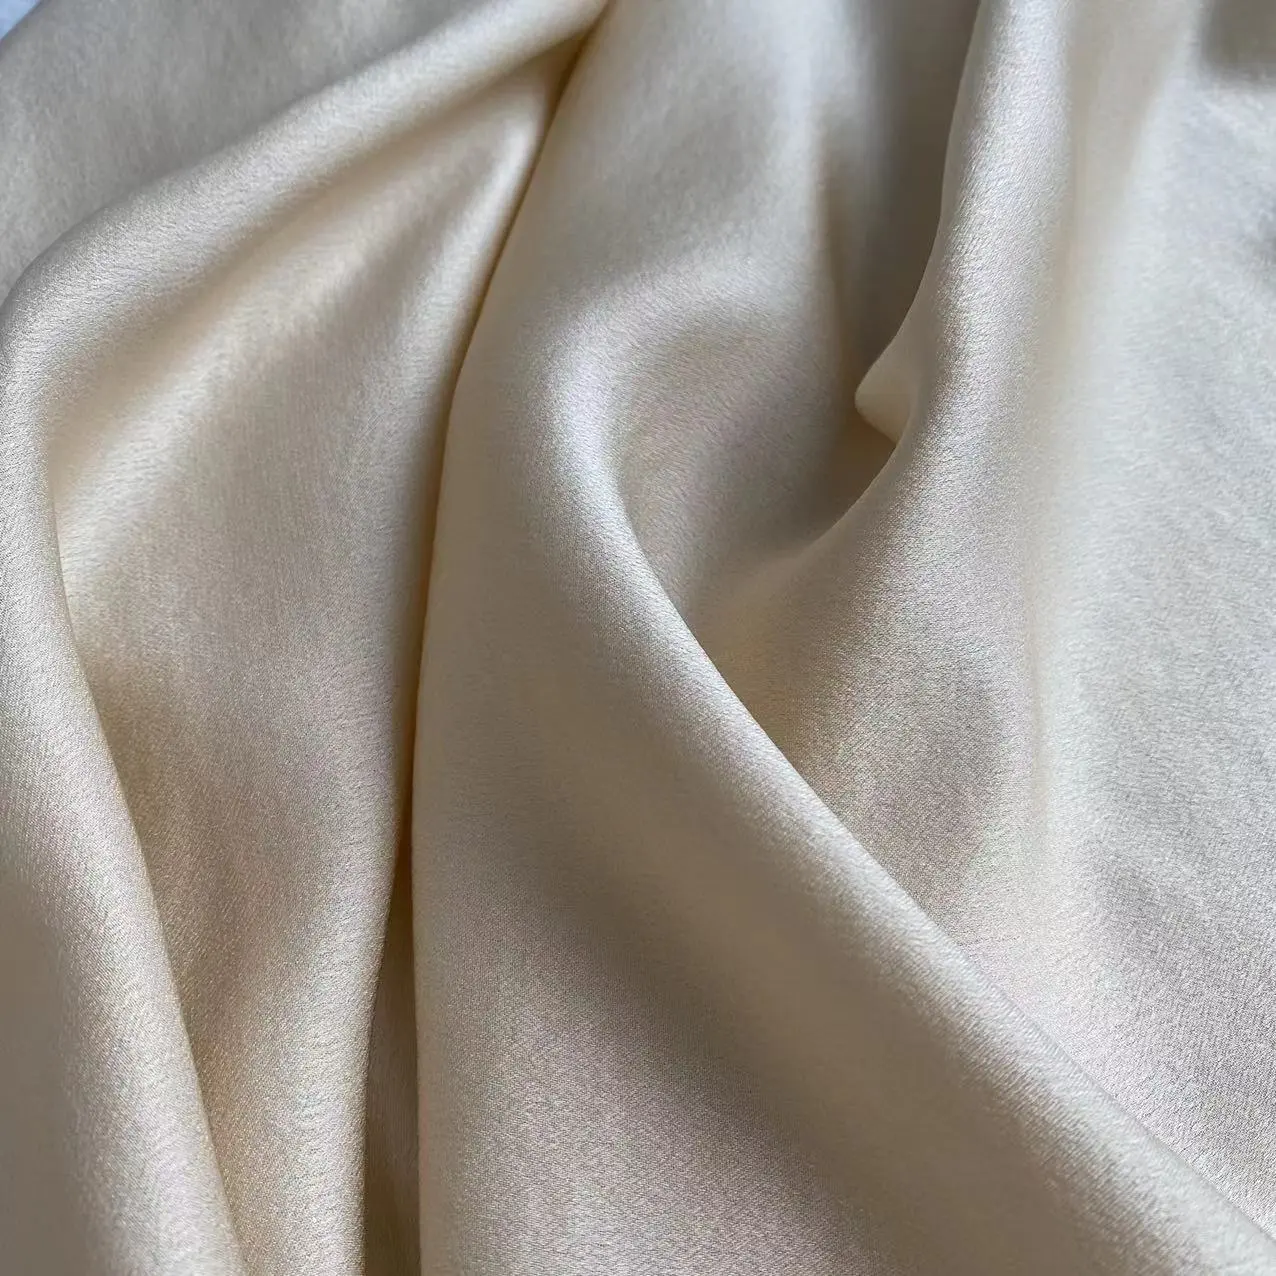  Tela de seda elástica 100% seda de morera, tela